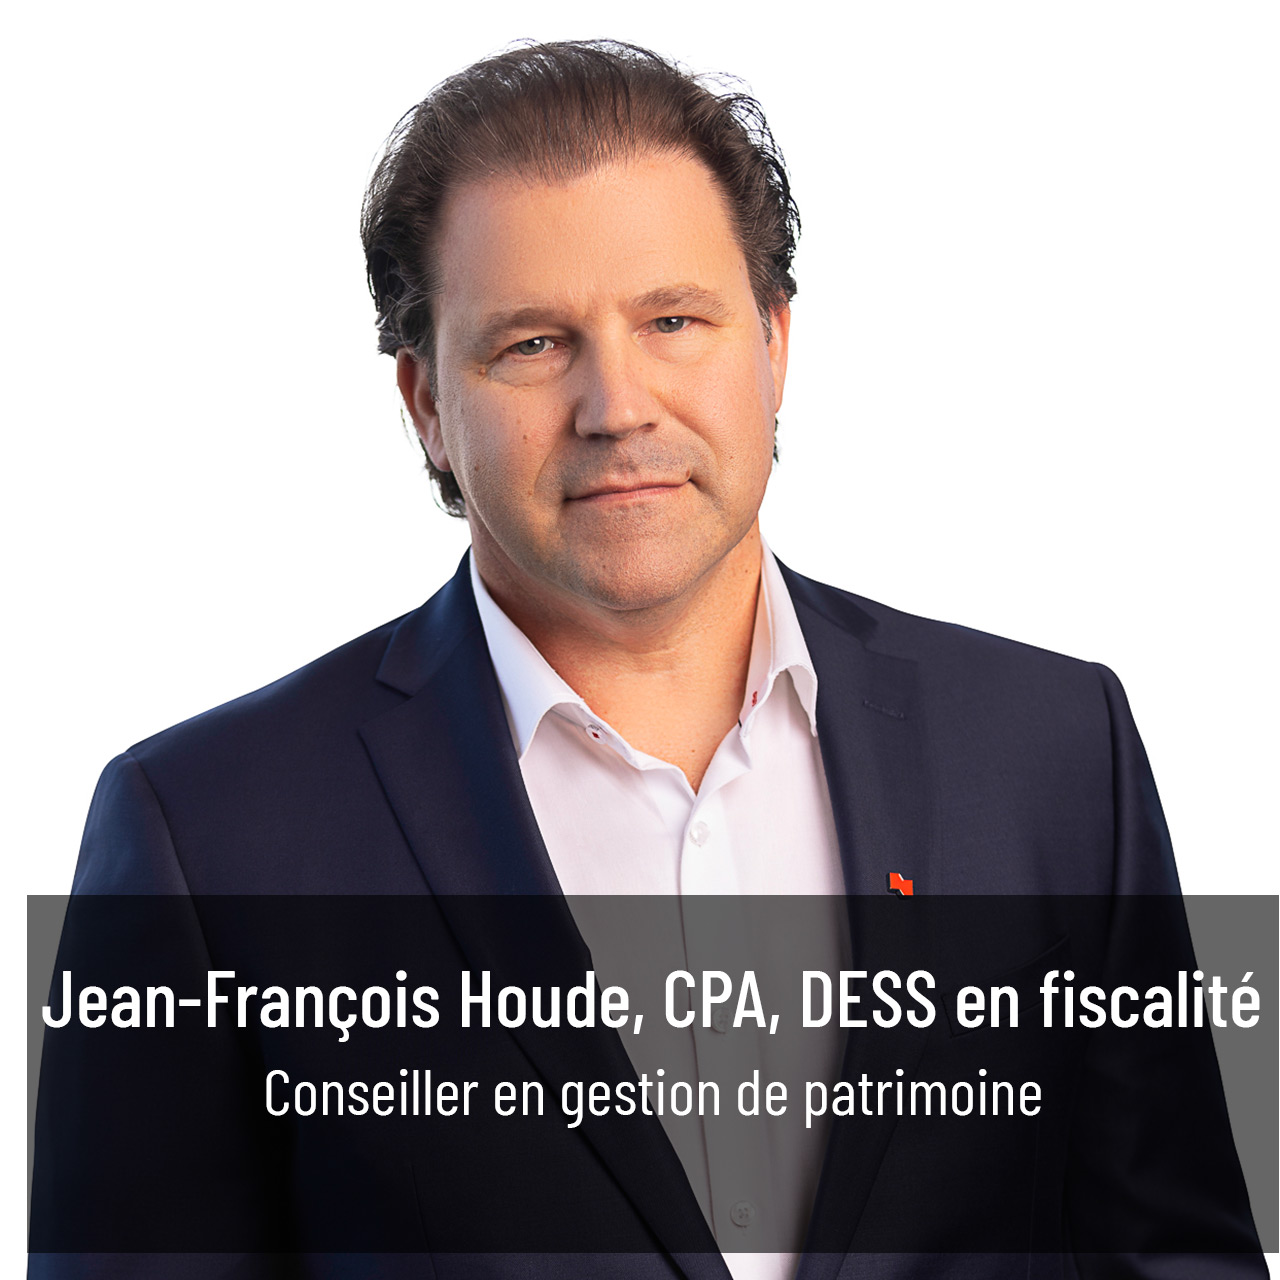 Jean-François Houde